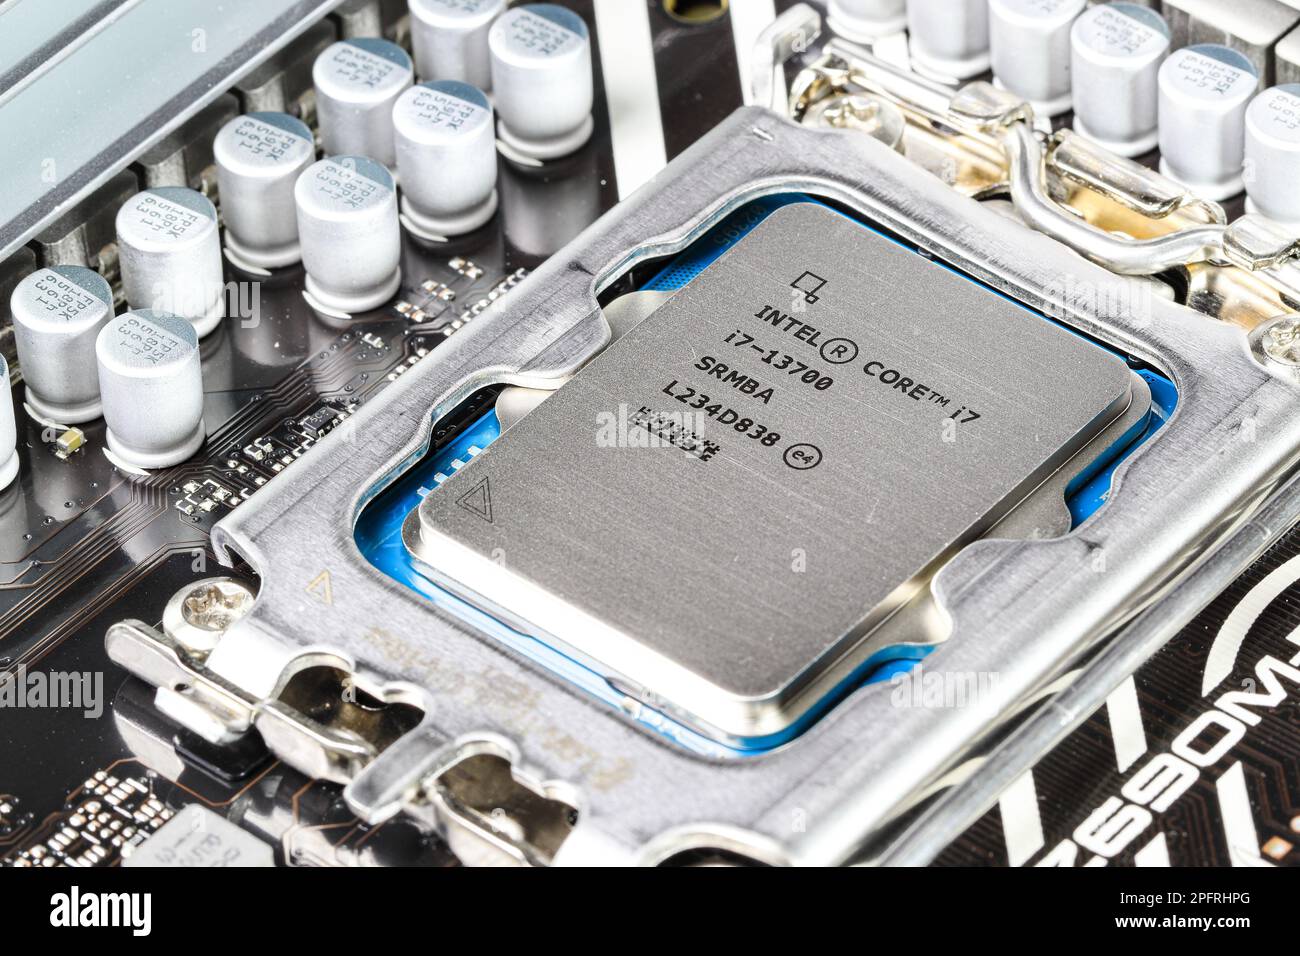 Nahaufnahme der Hochleistungs-CPU oder der zentralen Prozessoreinheit, die auf dem Motherboard installiert ist. Stockfoto